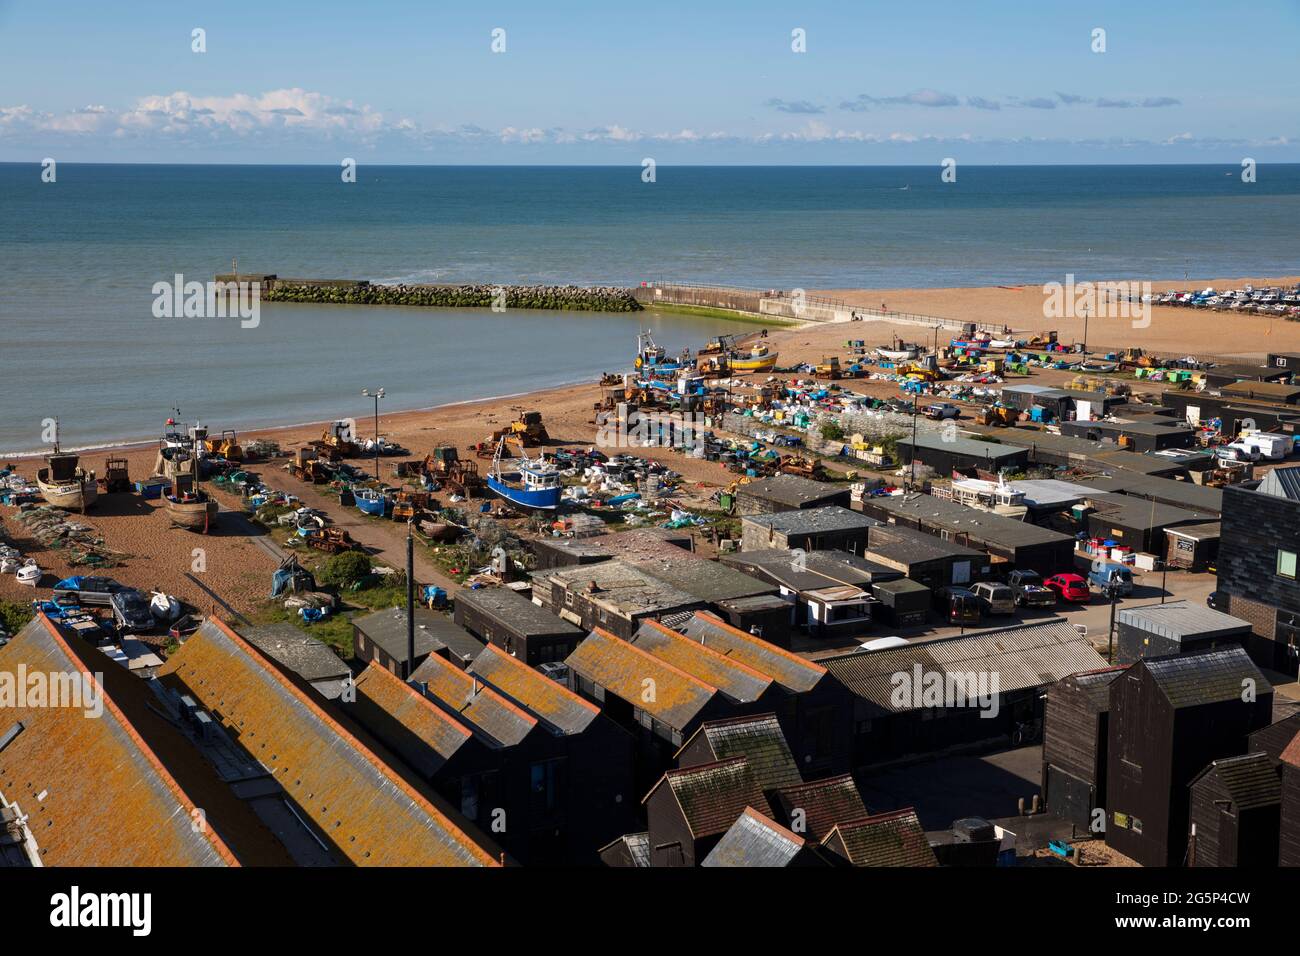 Blick über die Stade und die schwarzen Fischerhütten, Hastings, East Sussex, England, Vereinigtes Königreich, Europa Stockfoto